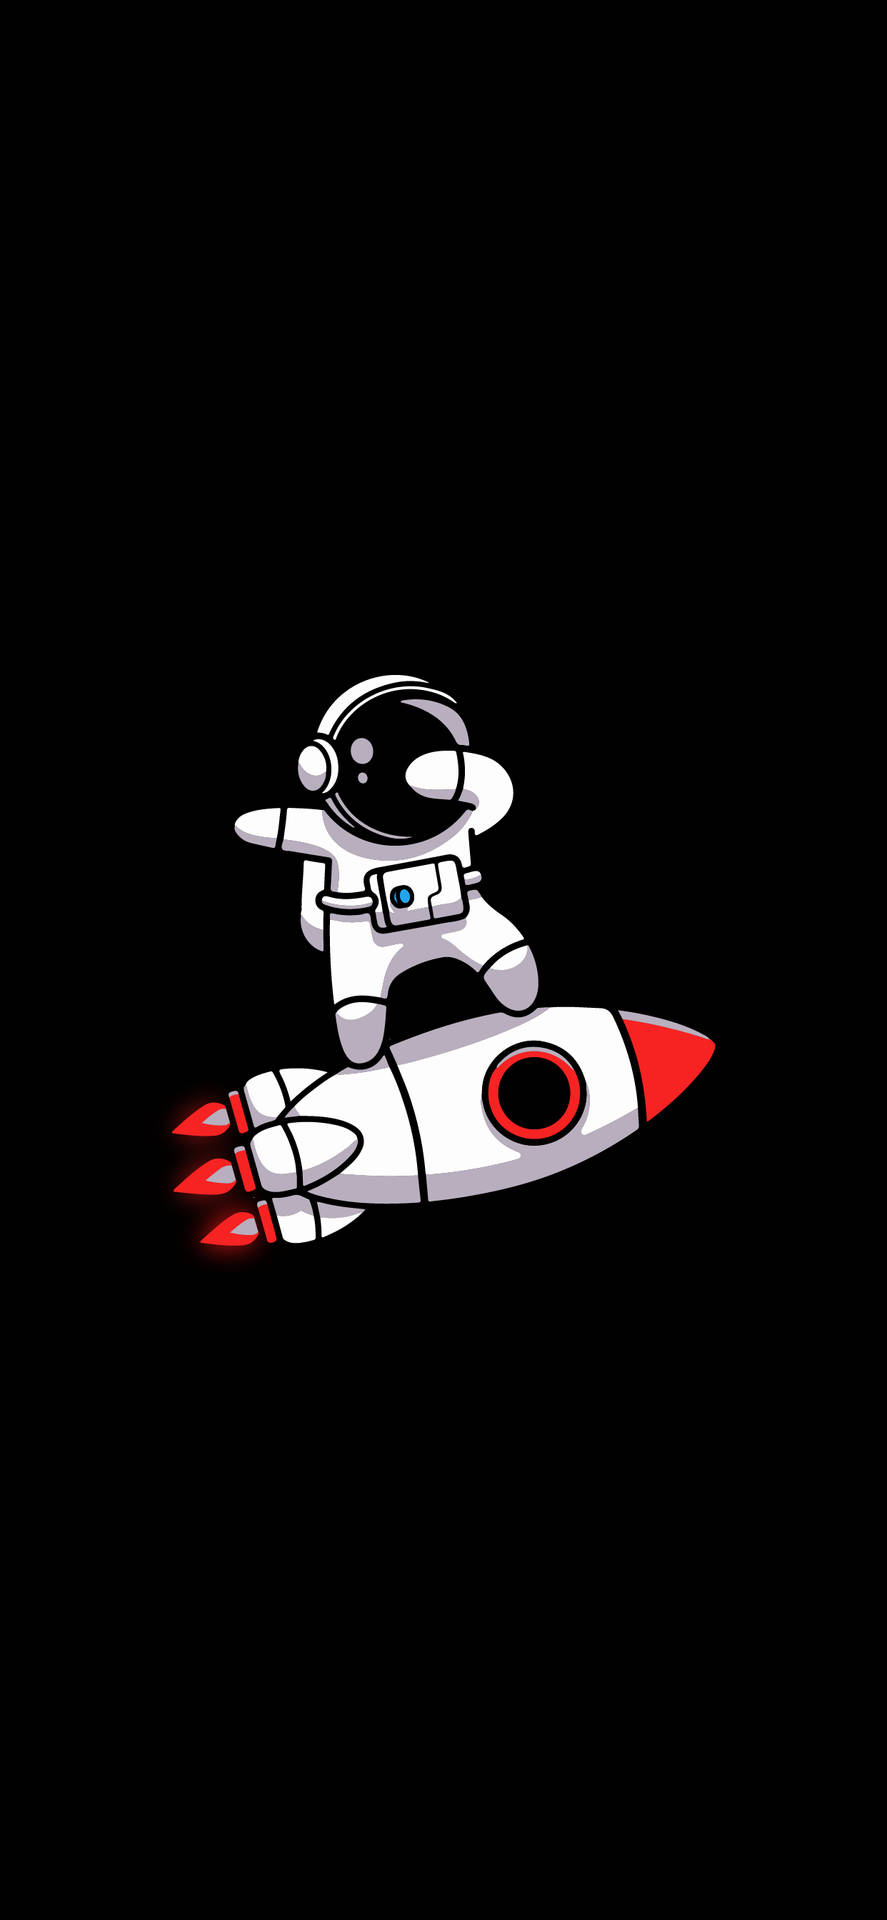 Artede Caricatura Miniatura De Astronauta En Blanco Y Negro. Fondo de pantalla